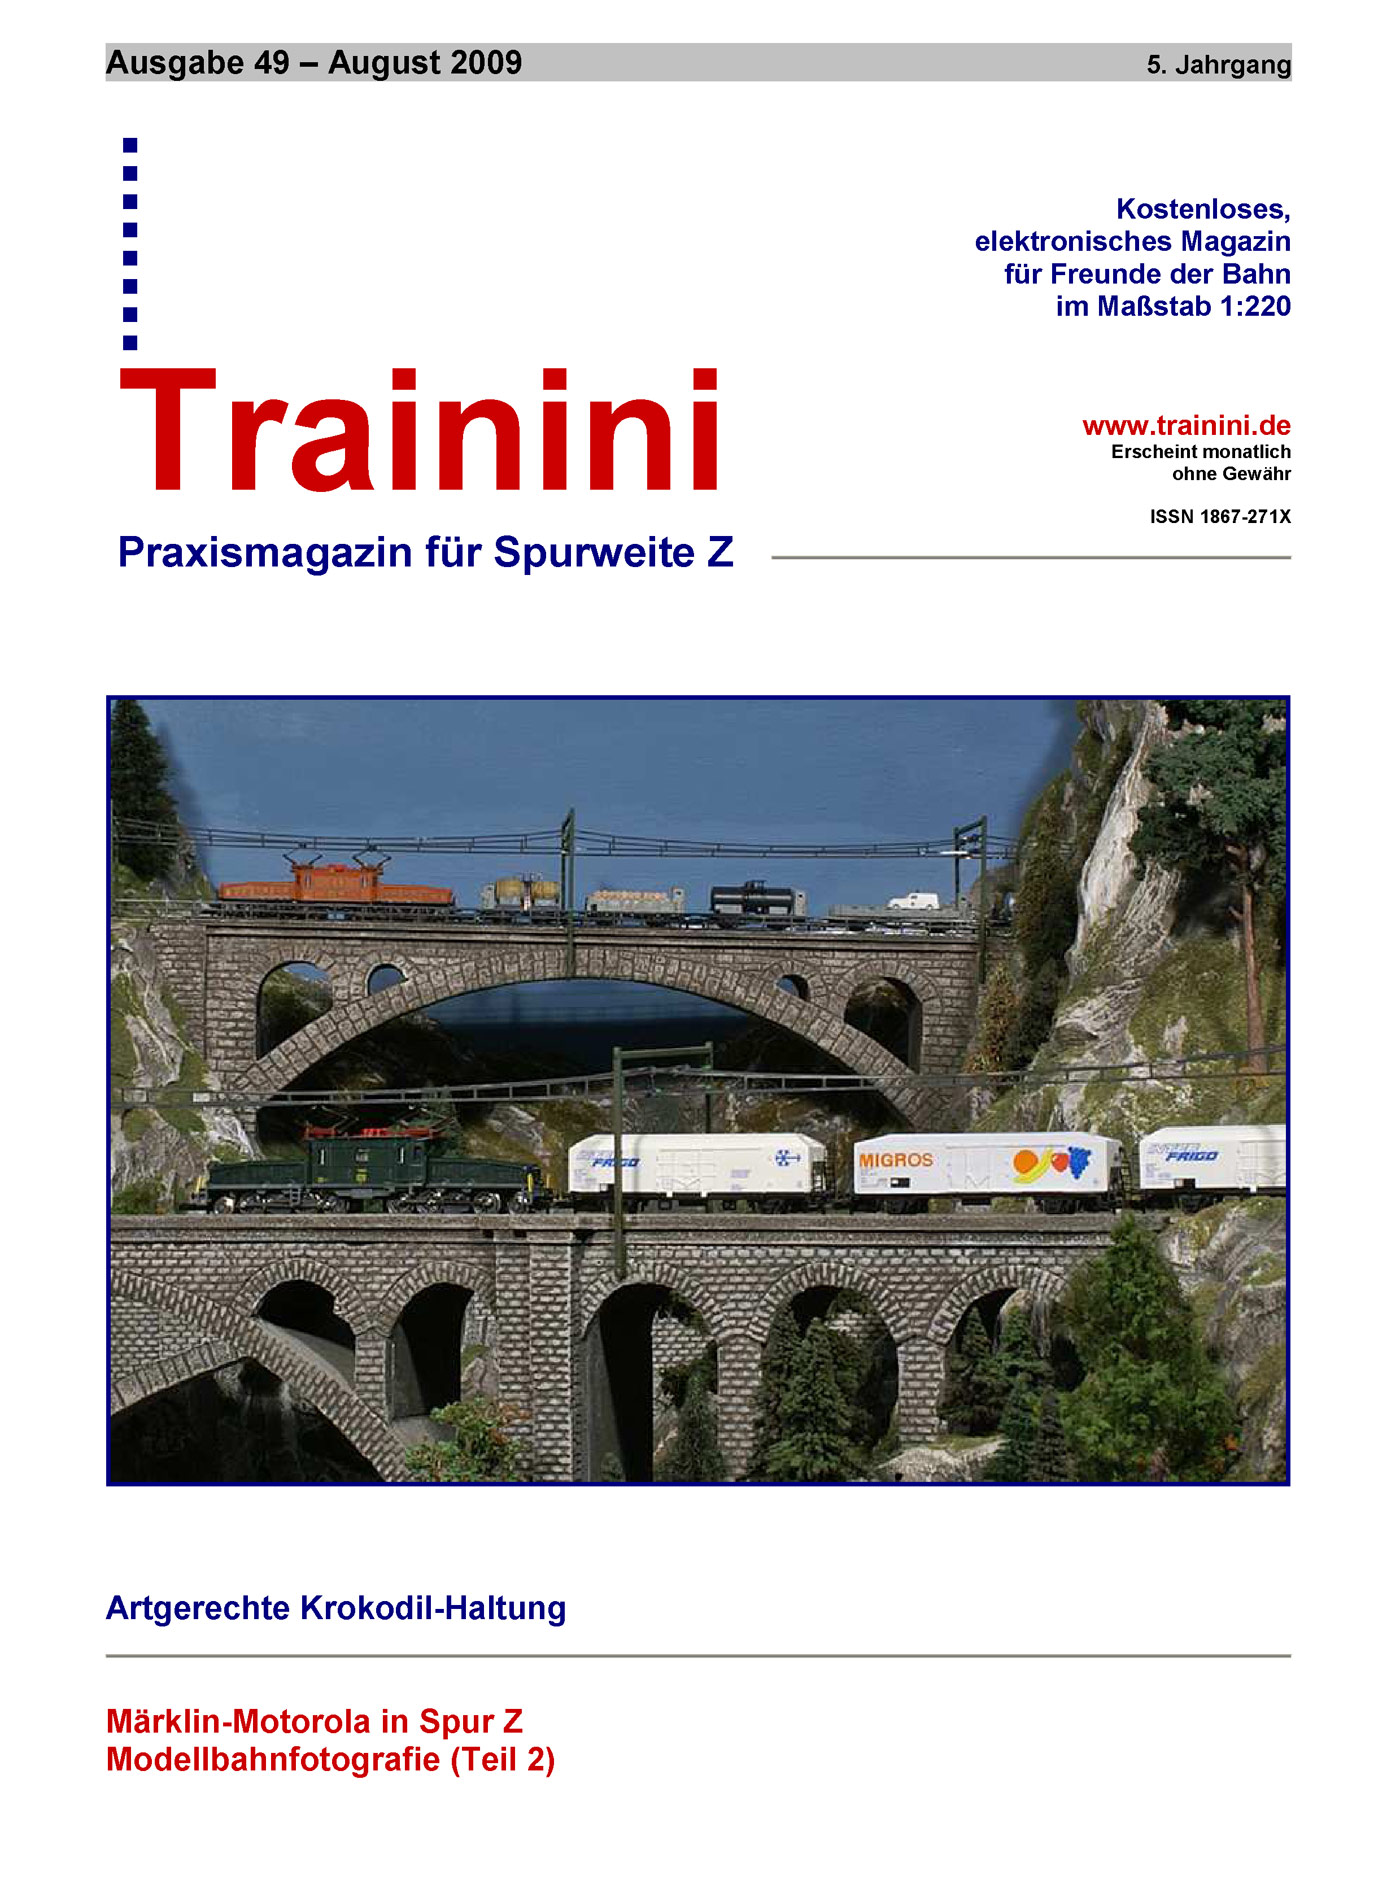 Trainini Ausgabe August 2009